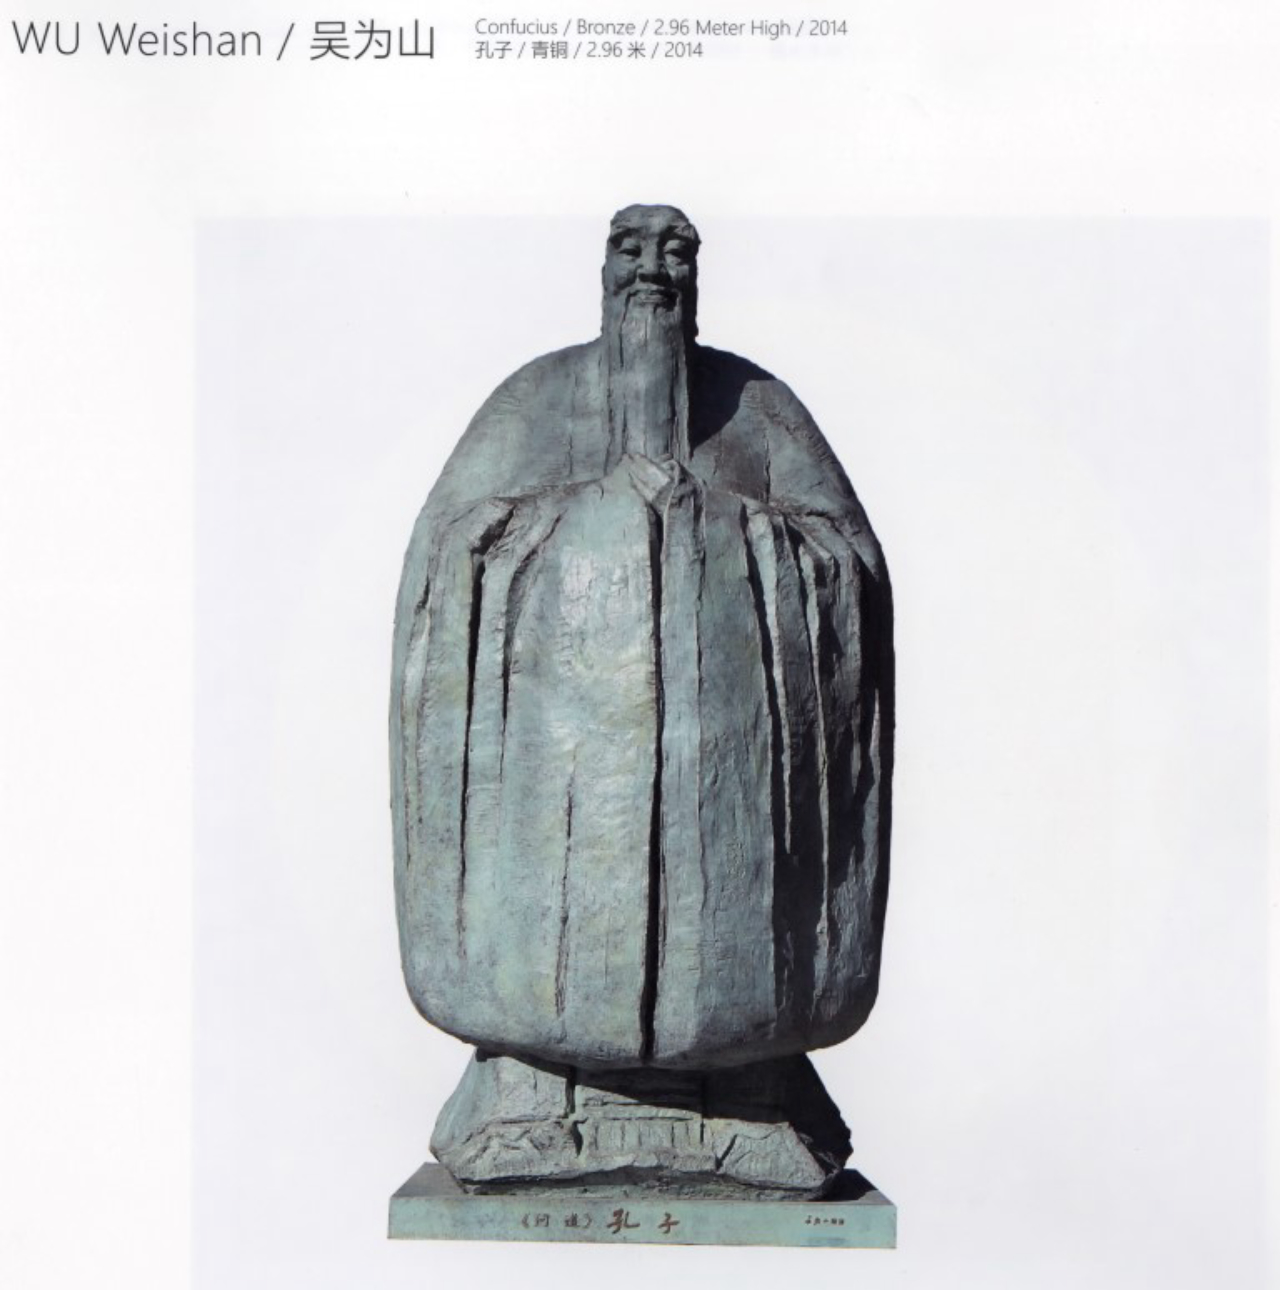 Imagem da estátua entregue para Curitiba pelo governo chinês. Foto: Livro da Bienal de Curitiba/Reprodução